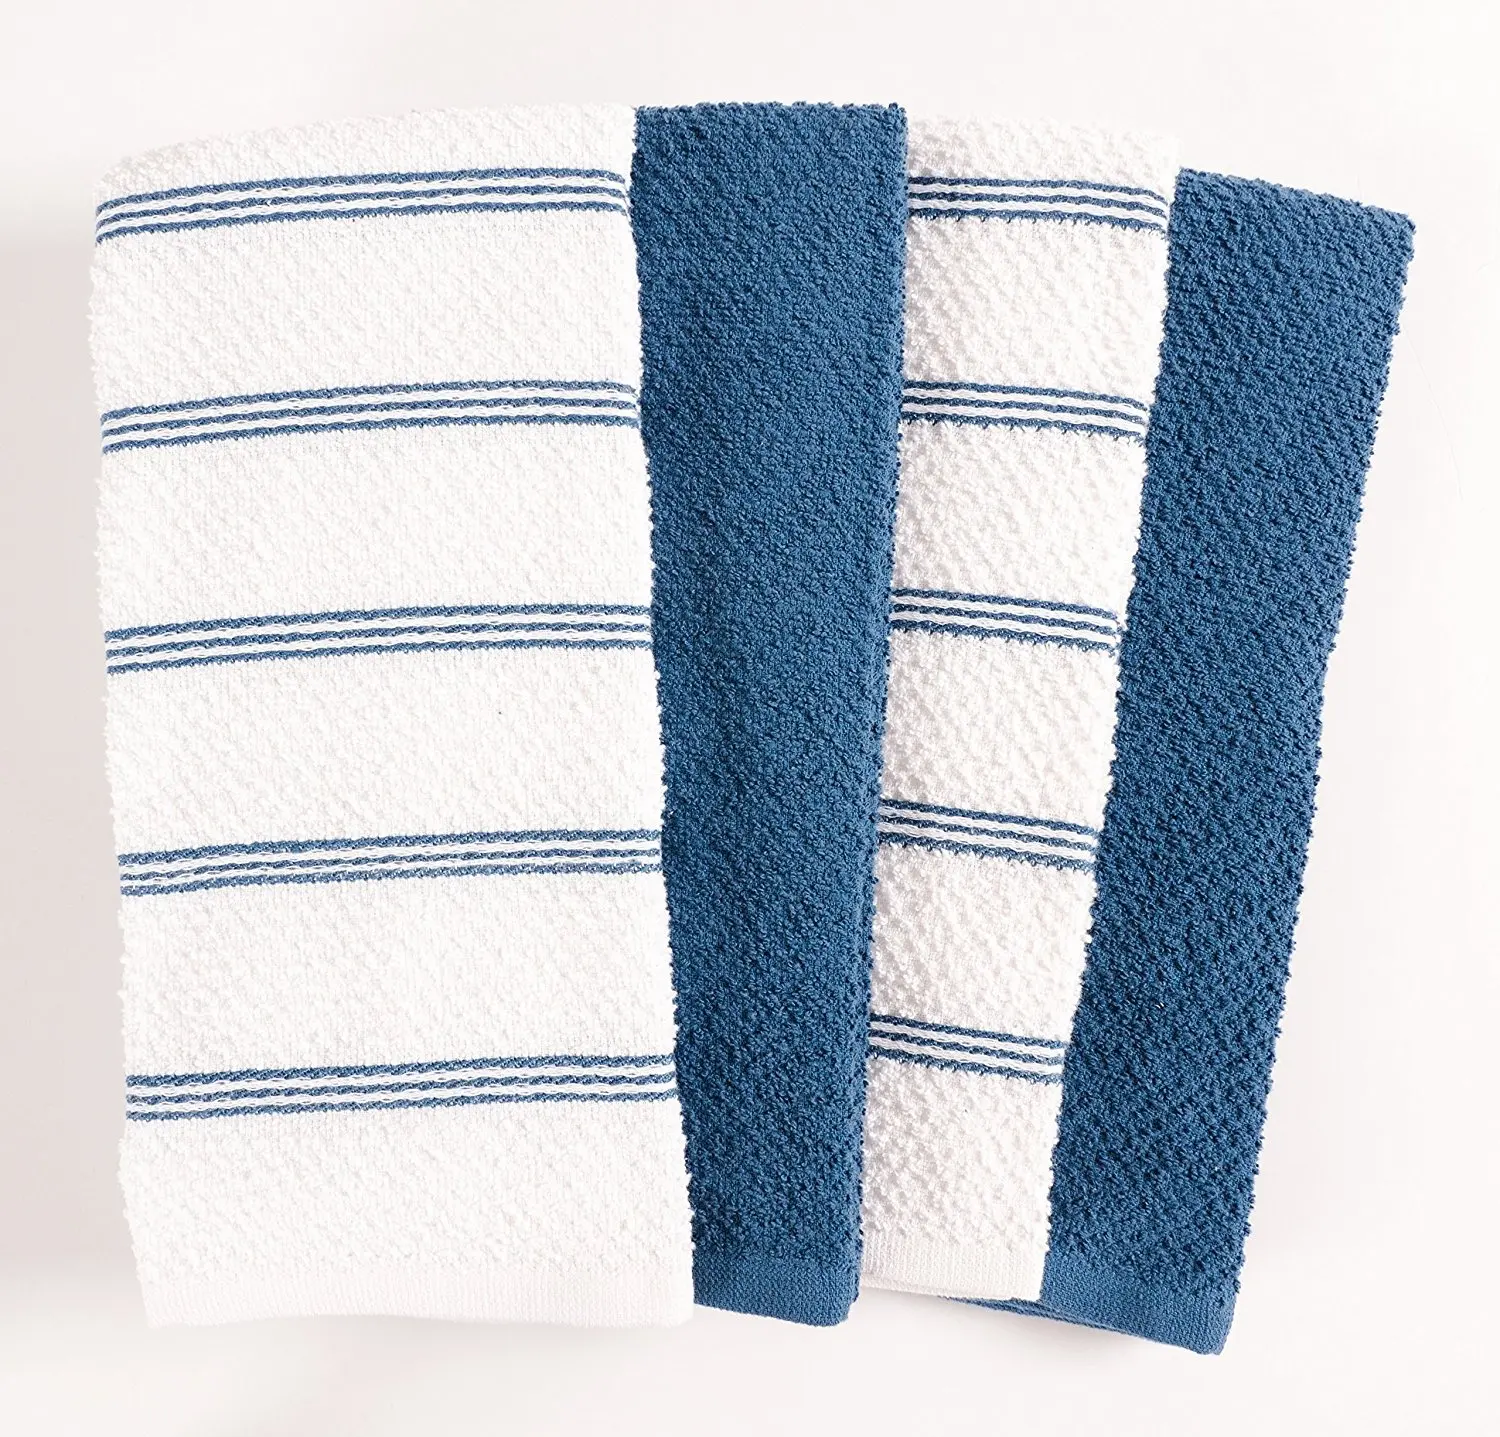 Toalha de algodão para cozinha, toalha de limpeza personalizada profissional